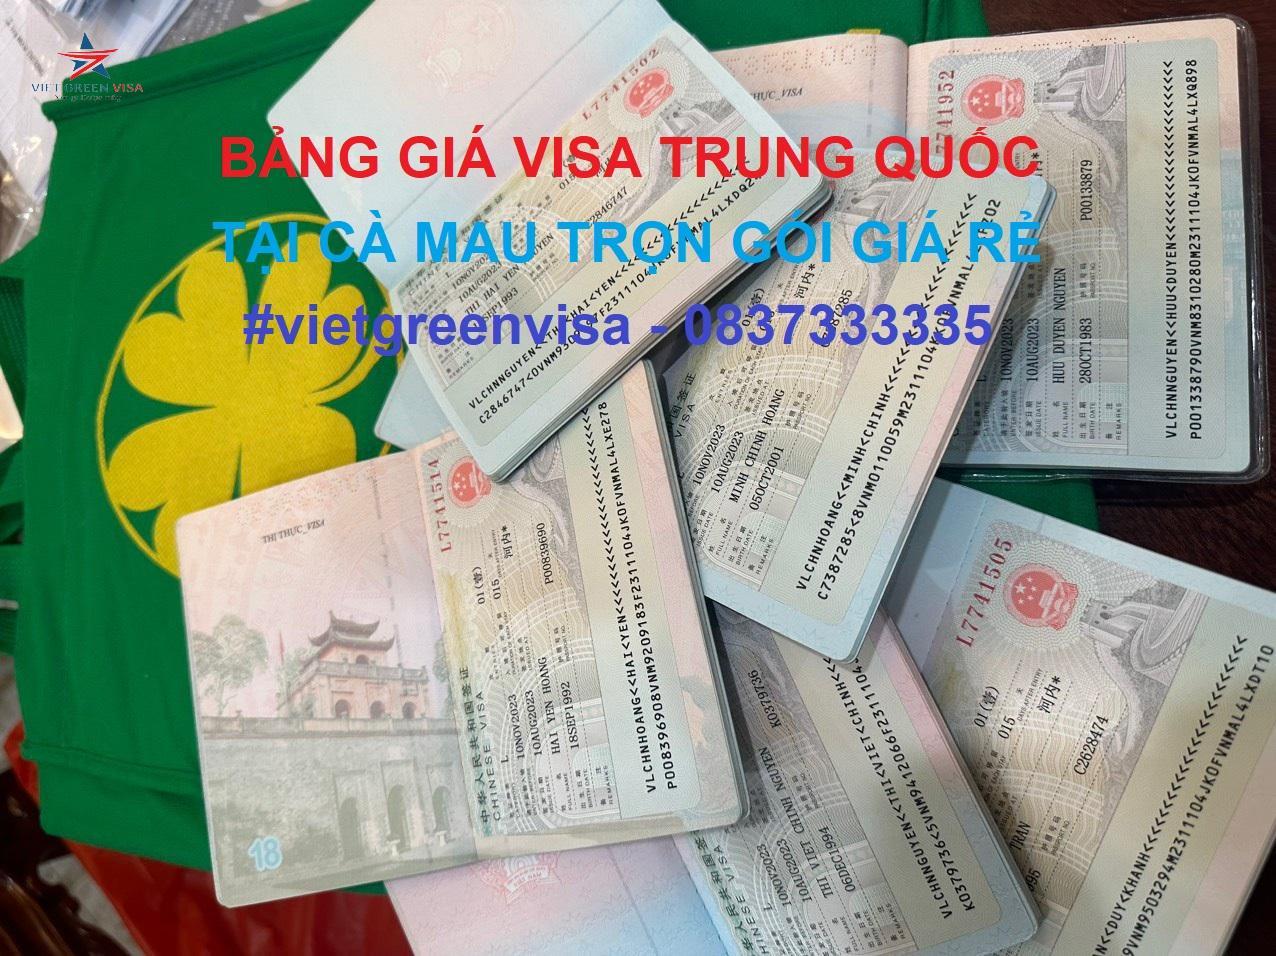 Dịch vụ xin visa Trung Quốc tại Cà Mau trọn gói